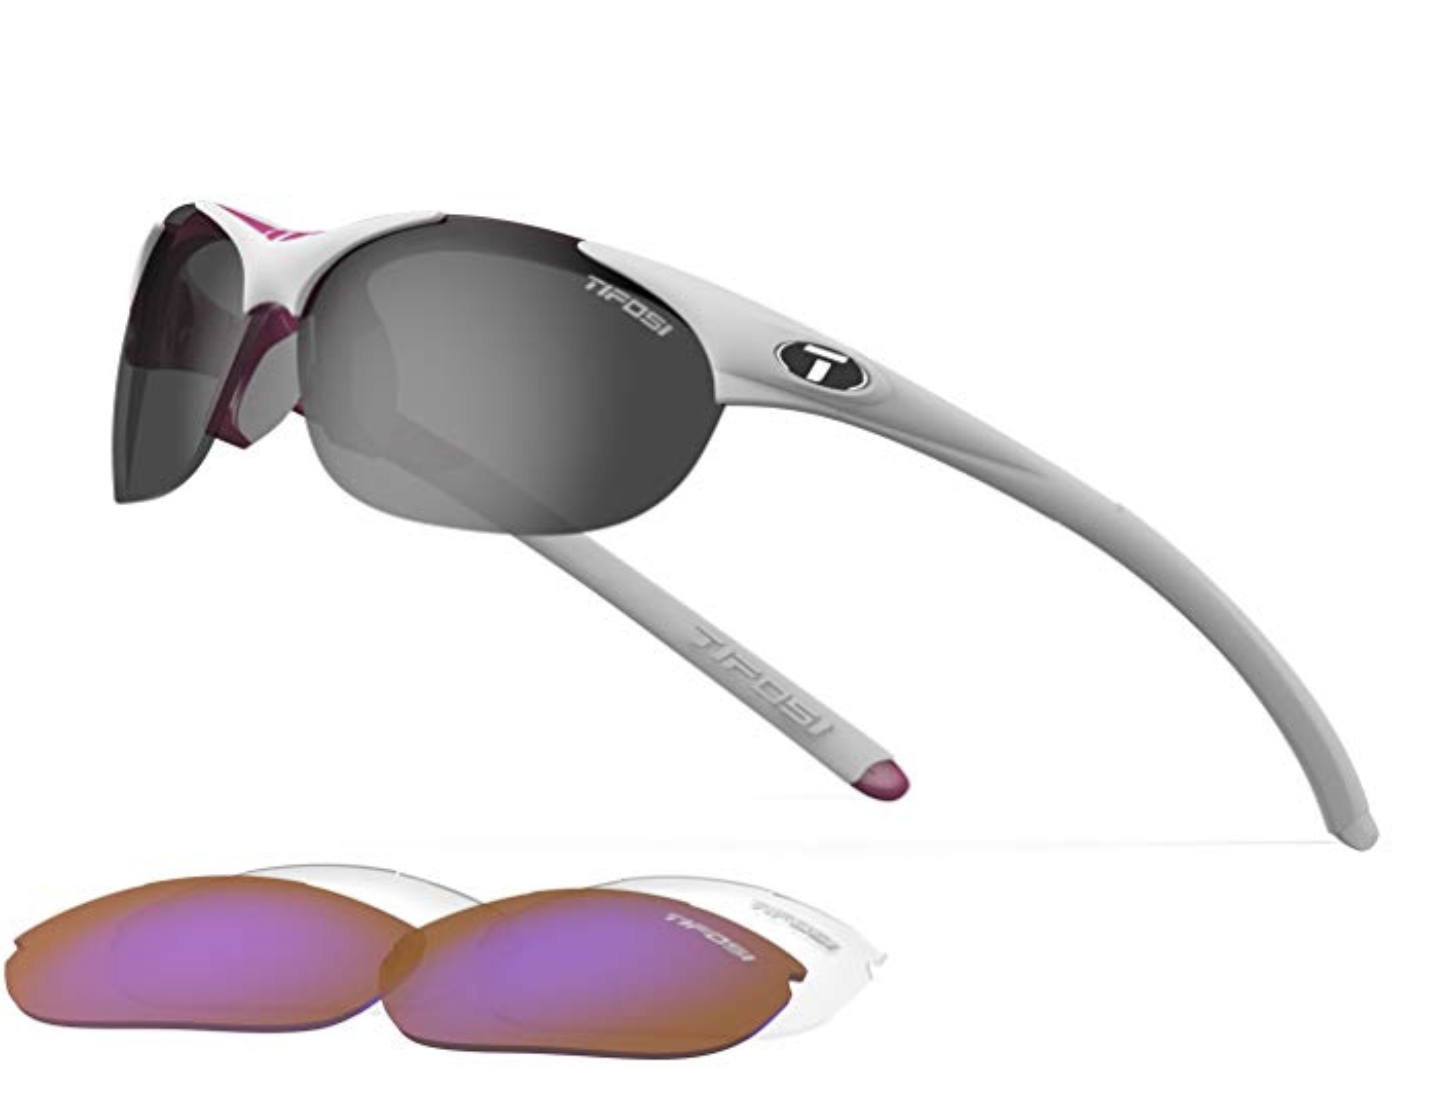 Tifosi Wisp Cycling Sunglasses for Women 